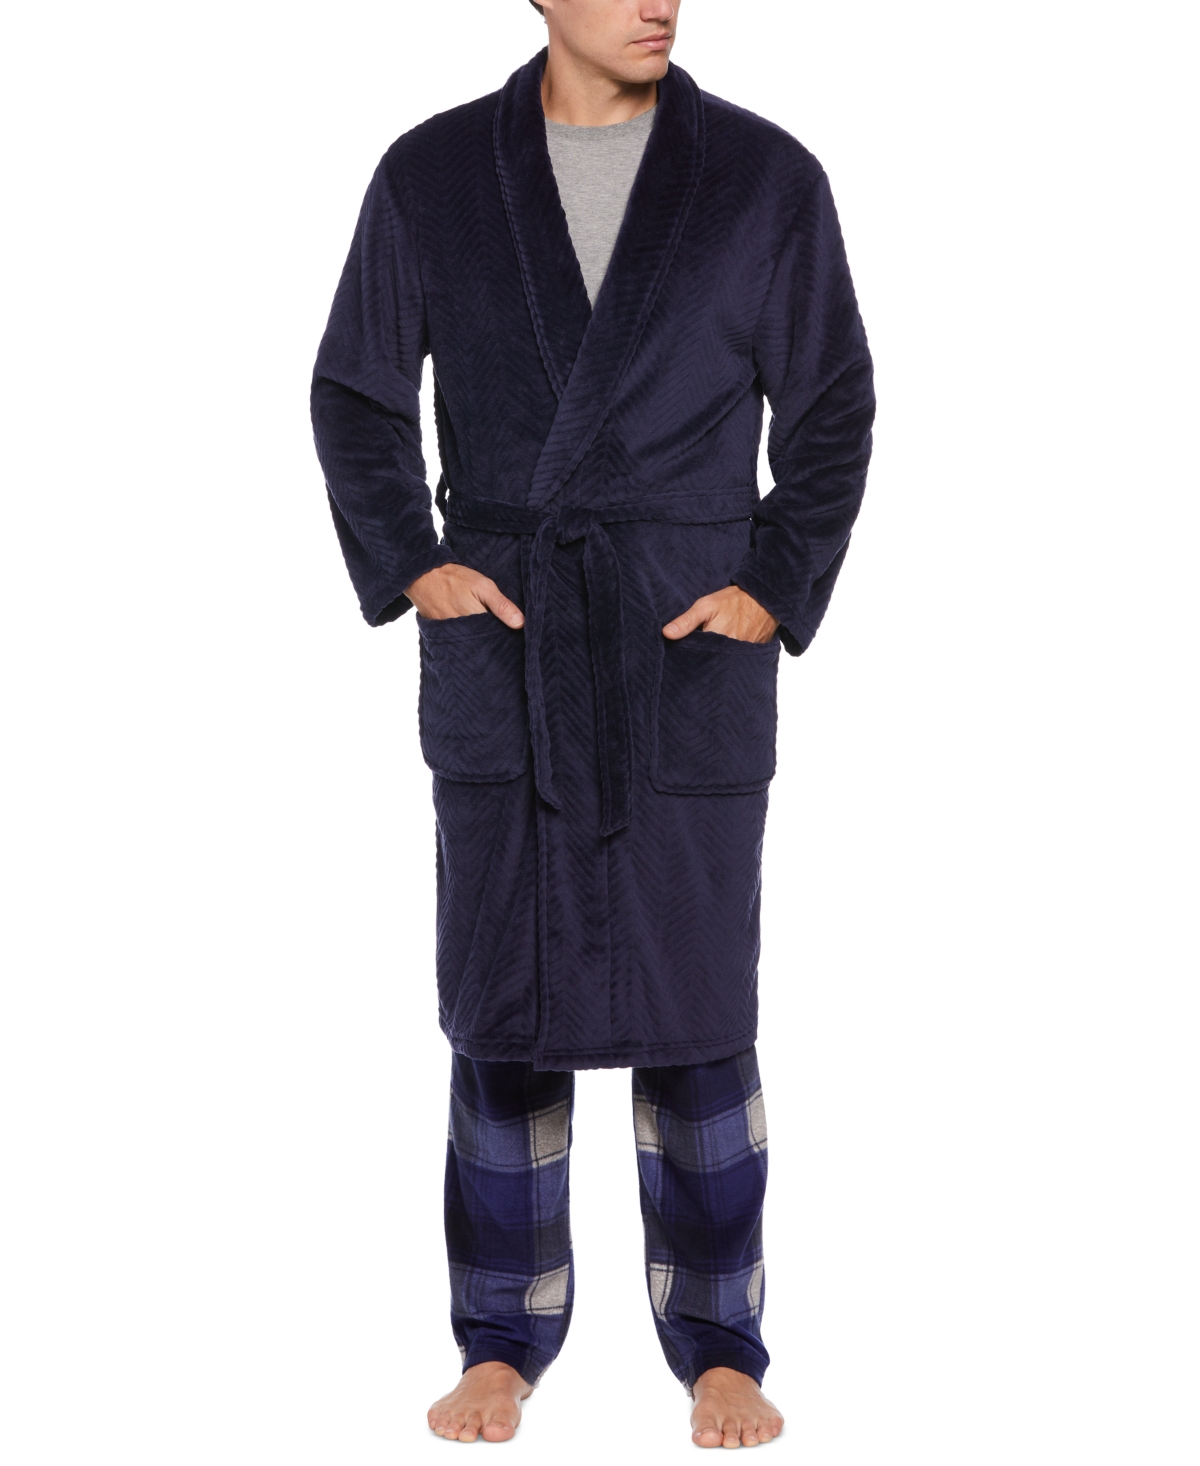 Men's Herringbone Textured Fleece Robe - Peacoat